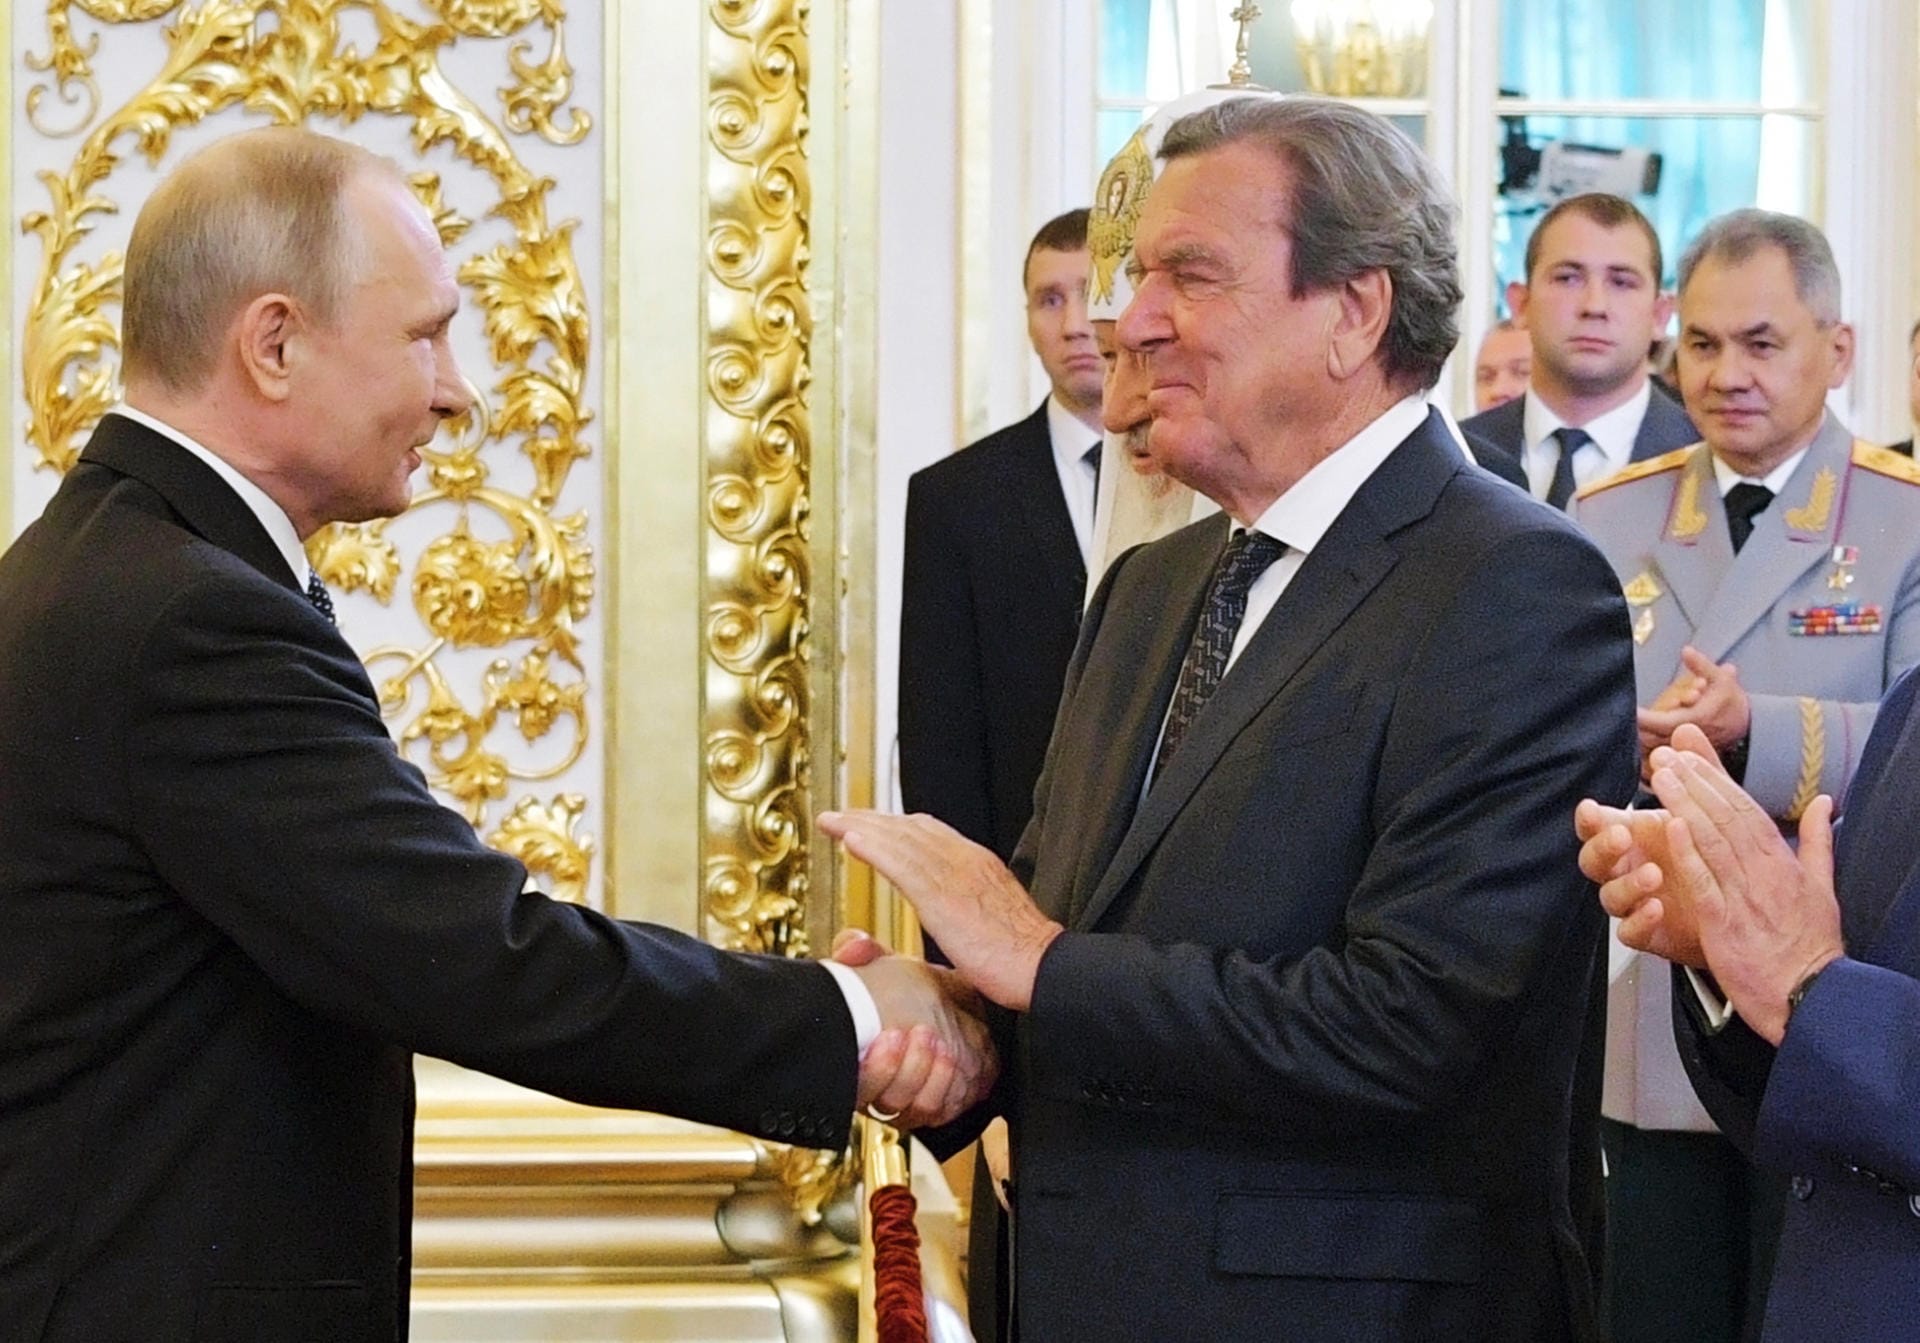 Einer der ersten Gratulanten: Ex-Kanzler Gerhard Schröder verfolgte die Vereidigung in der ersten Reihe, schüttelte Putin anschließend die Hand.